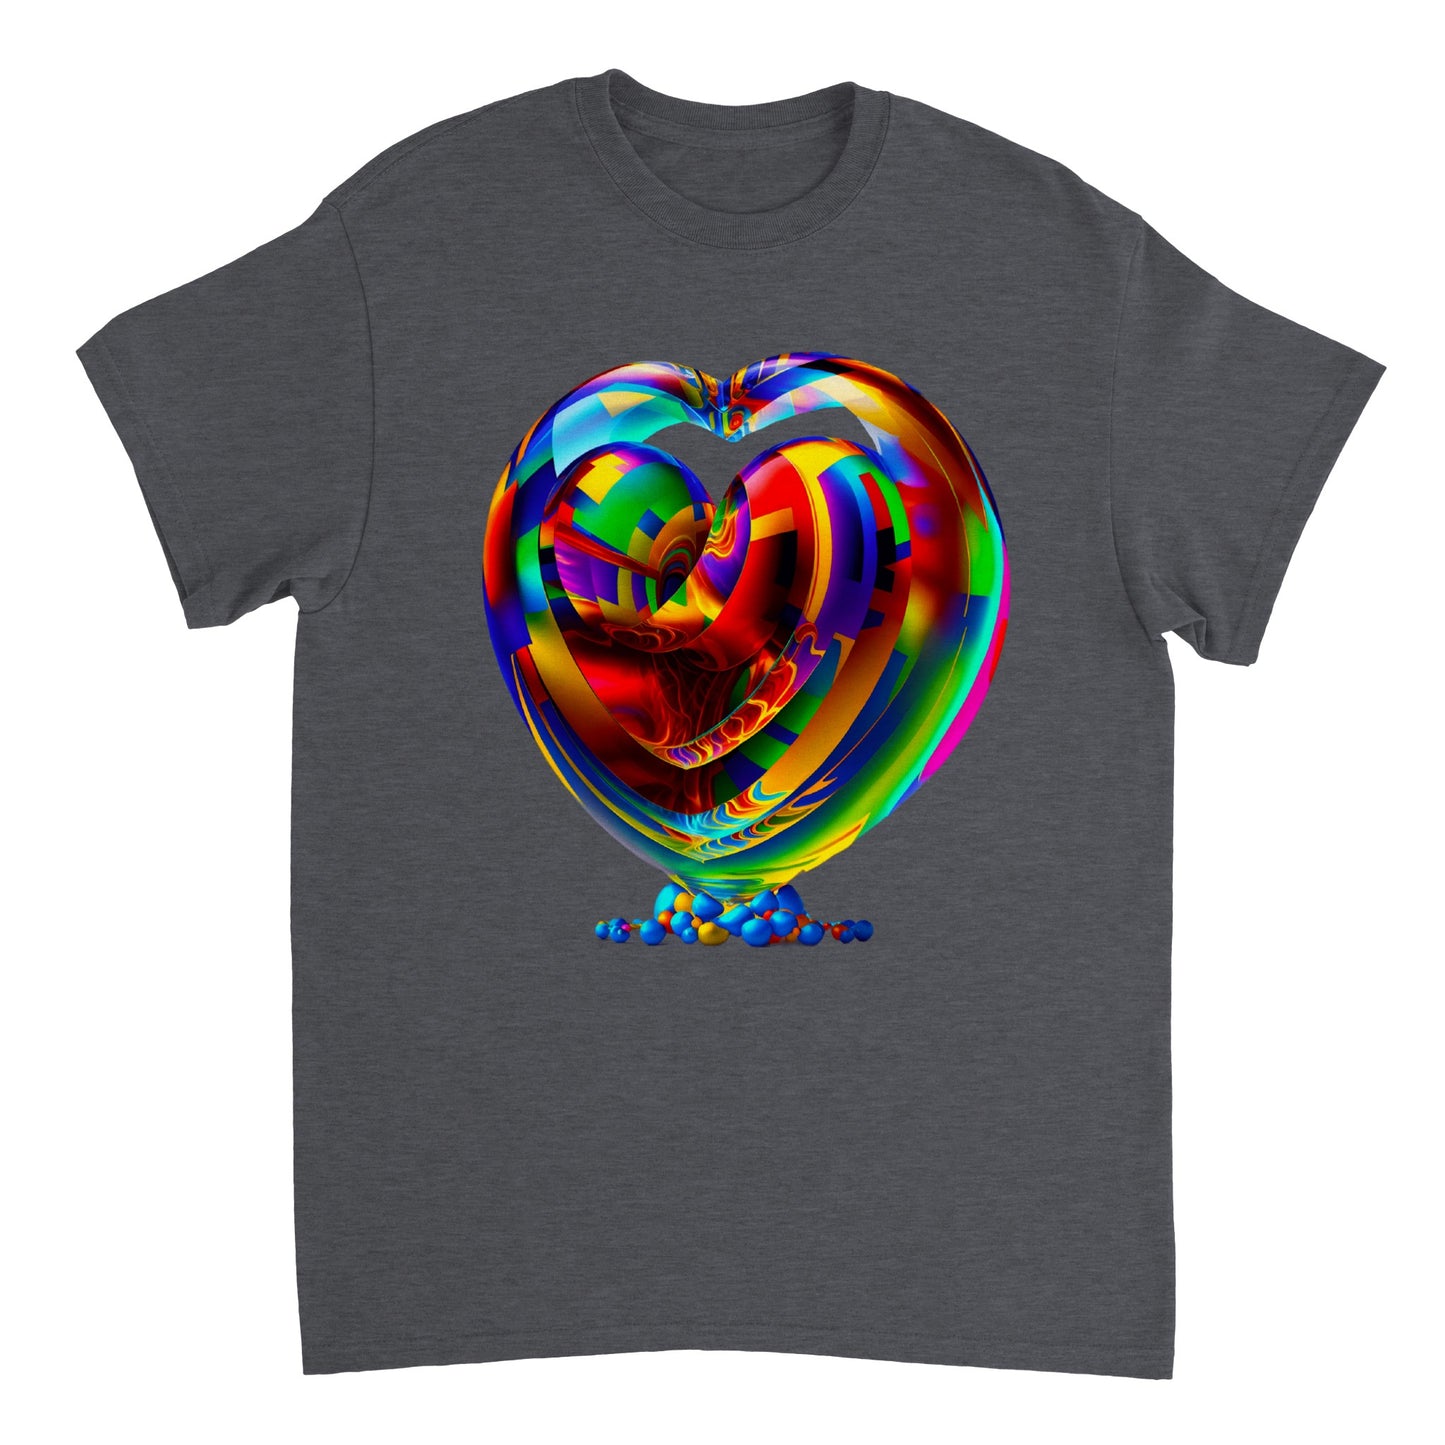 Love Heart - Heavyweight Unisex Crewneck T-shirt 35